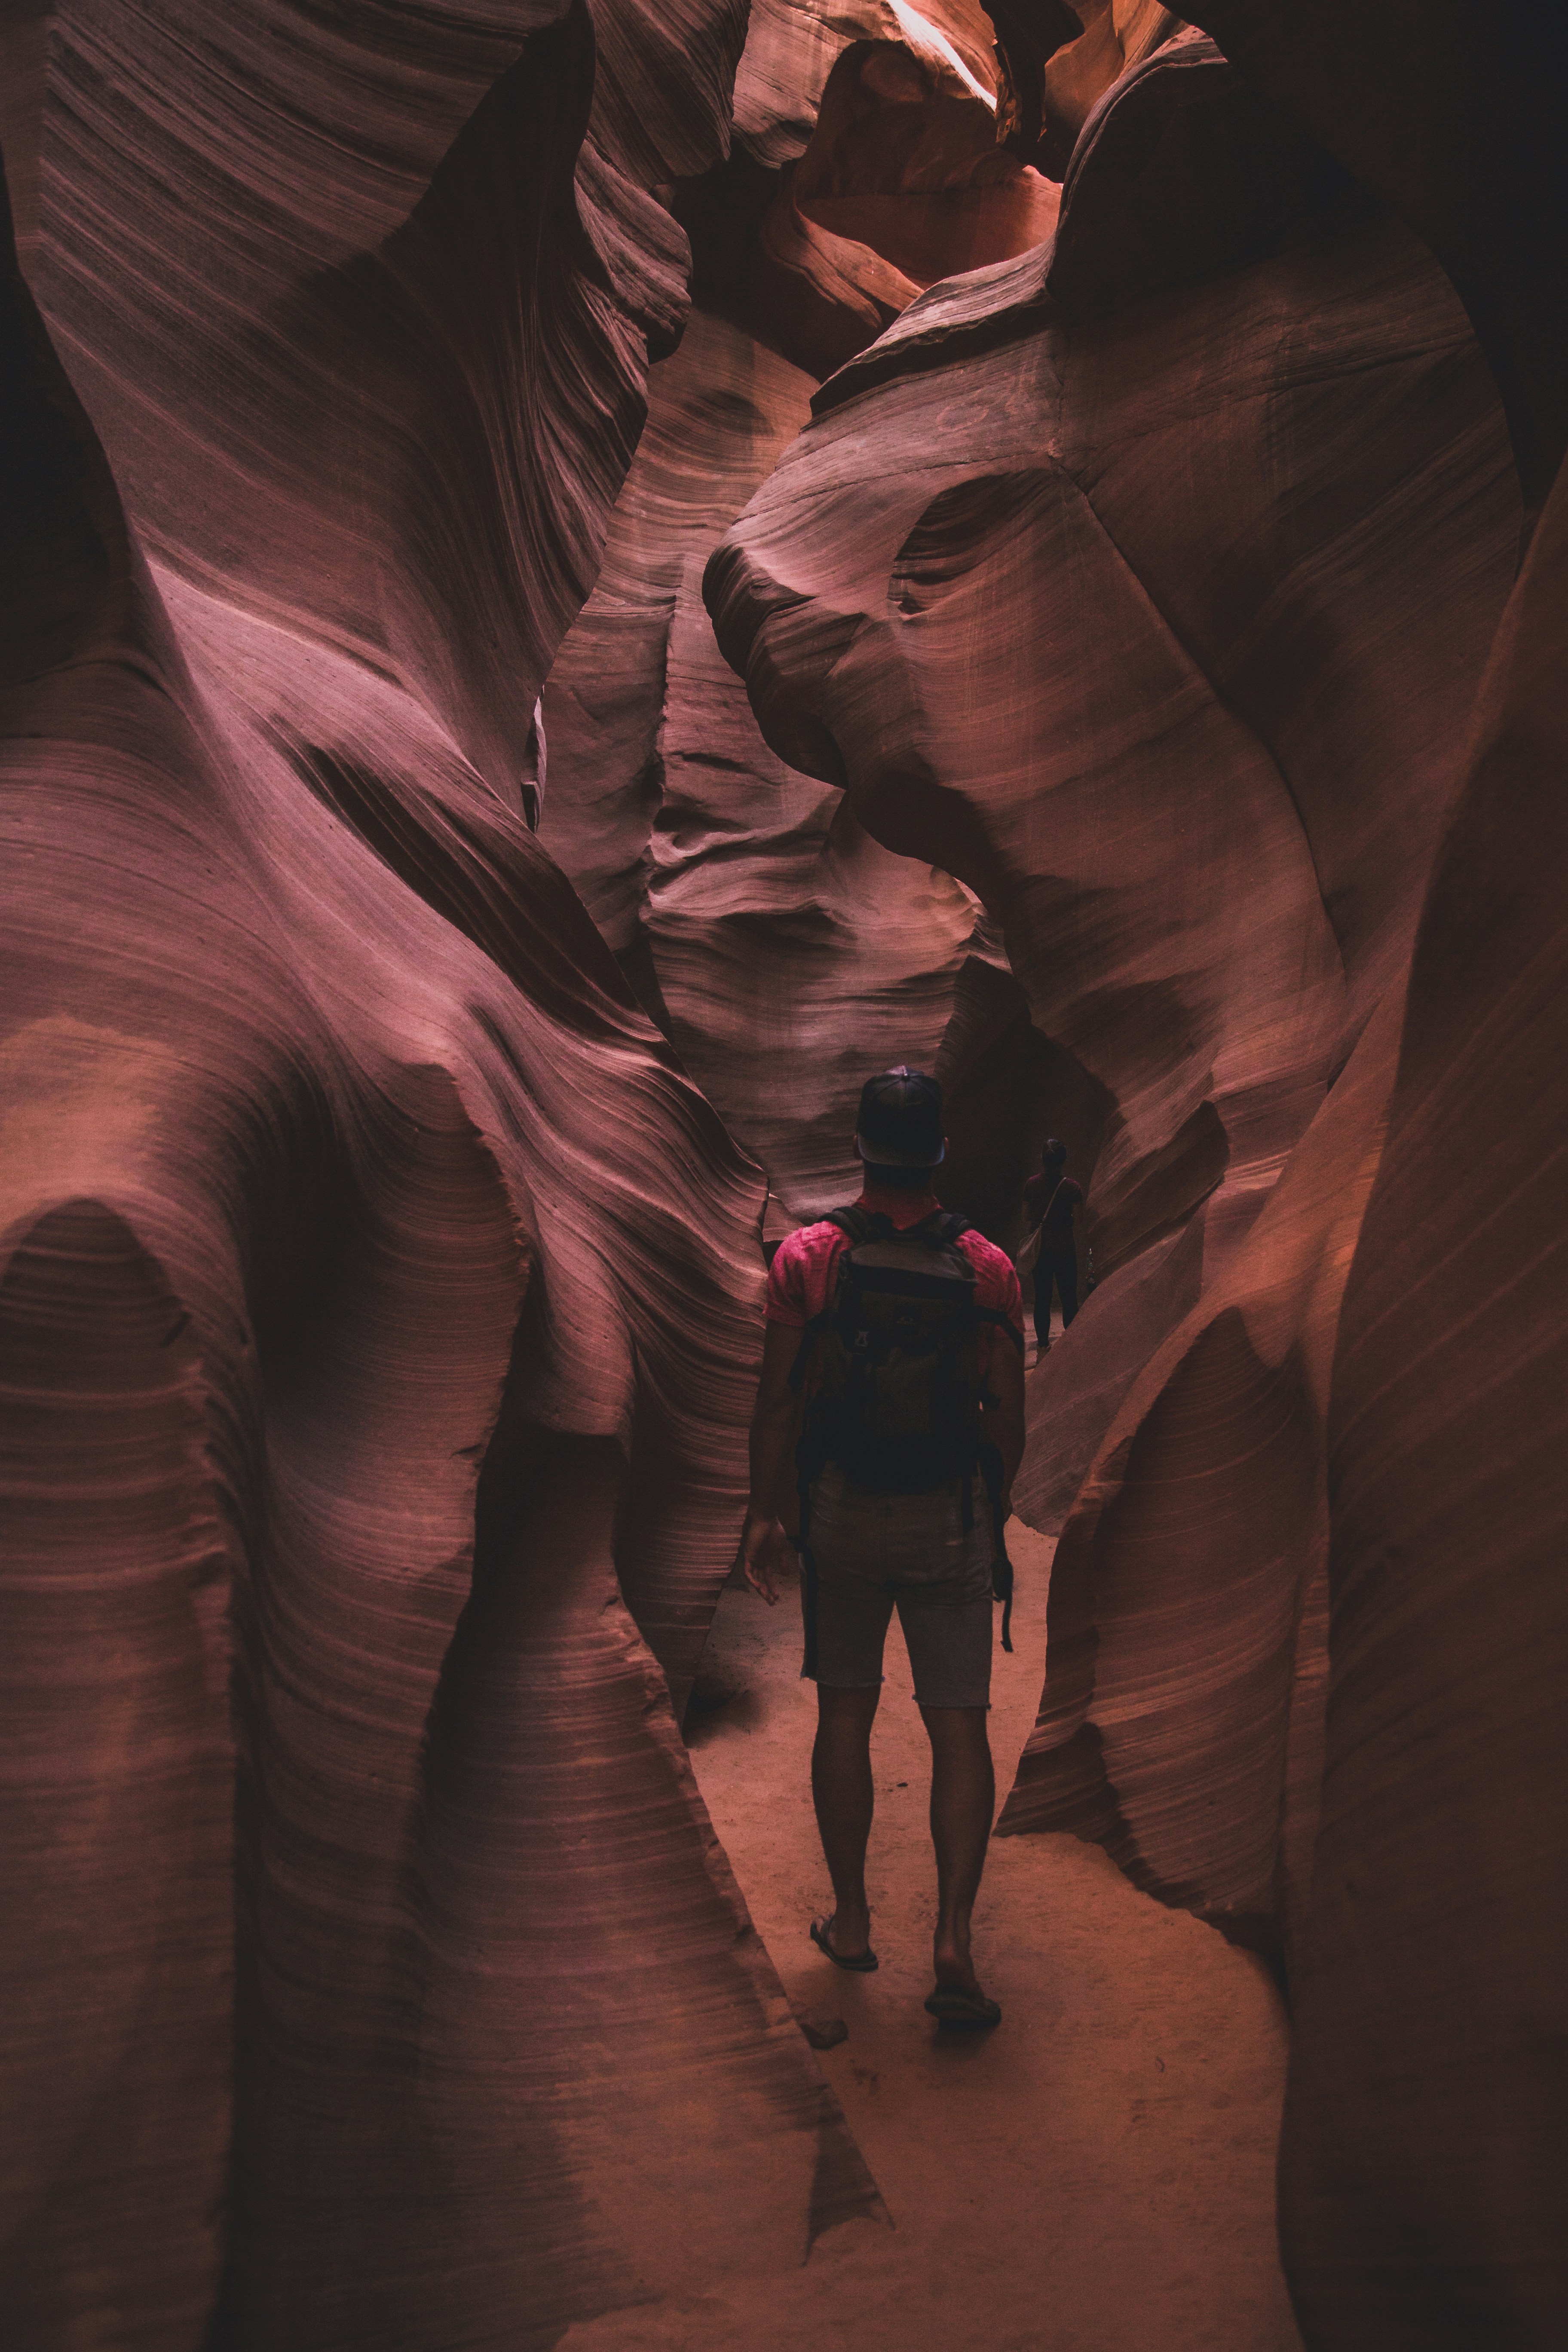 Walking through antelope canyon